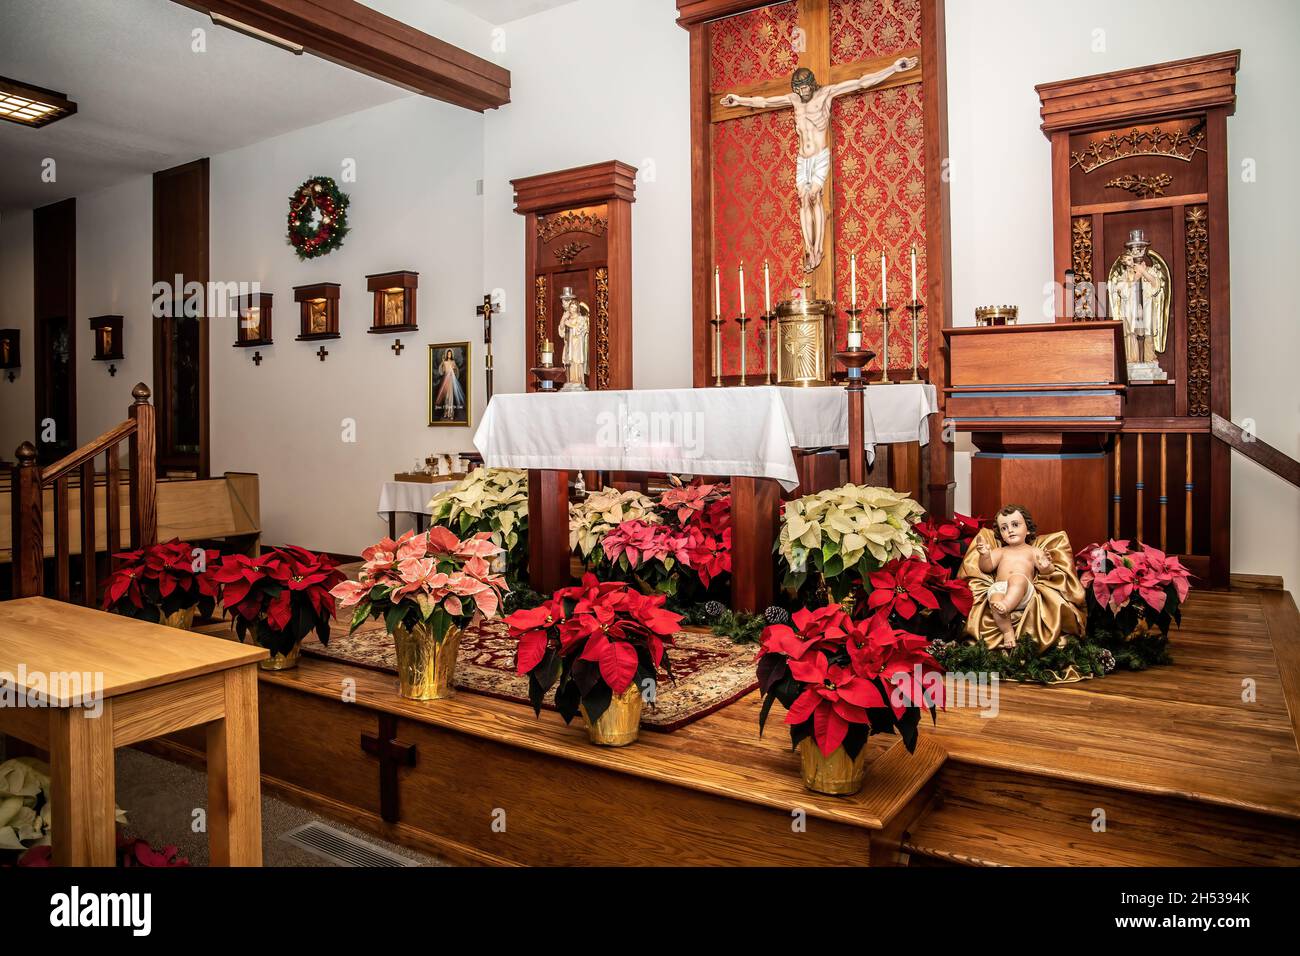 Die katholische Kirche des heiligen Josef, die am Weihnachtstag mit Weihnachtssterben und dem Jesuskind um den Altar geschmückt ist. Stockfoto